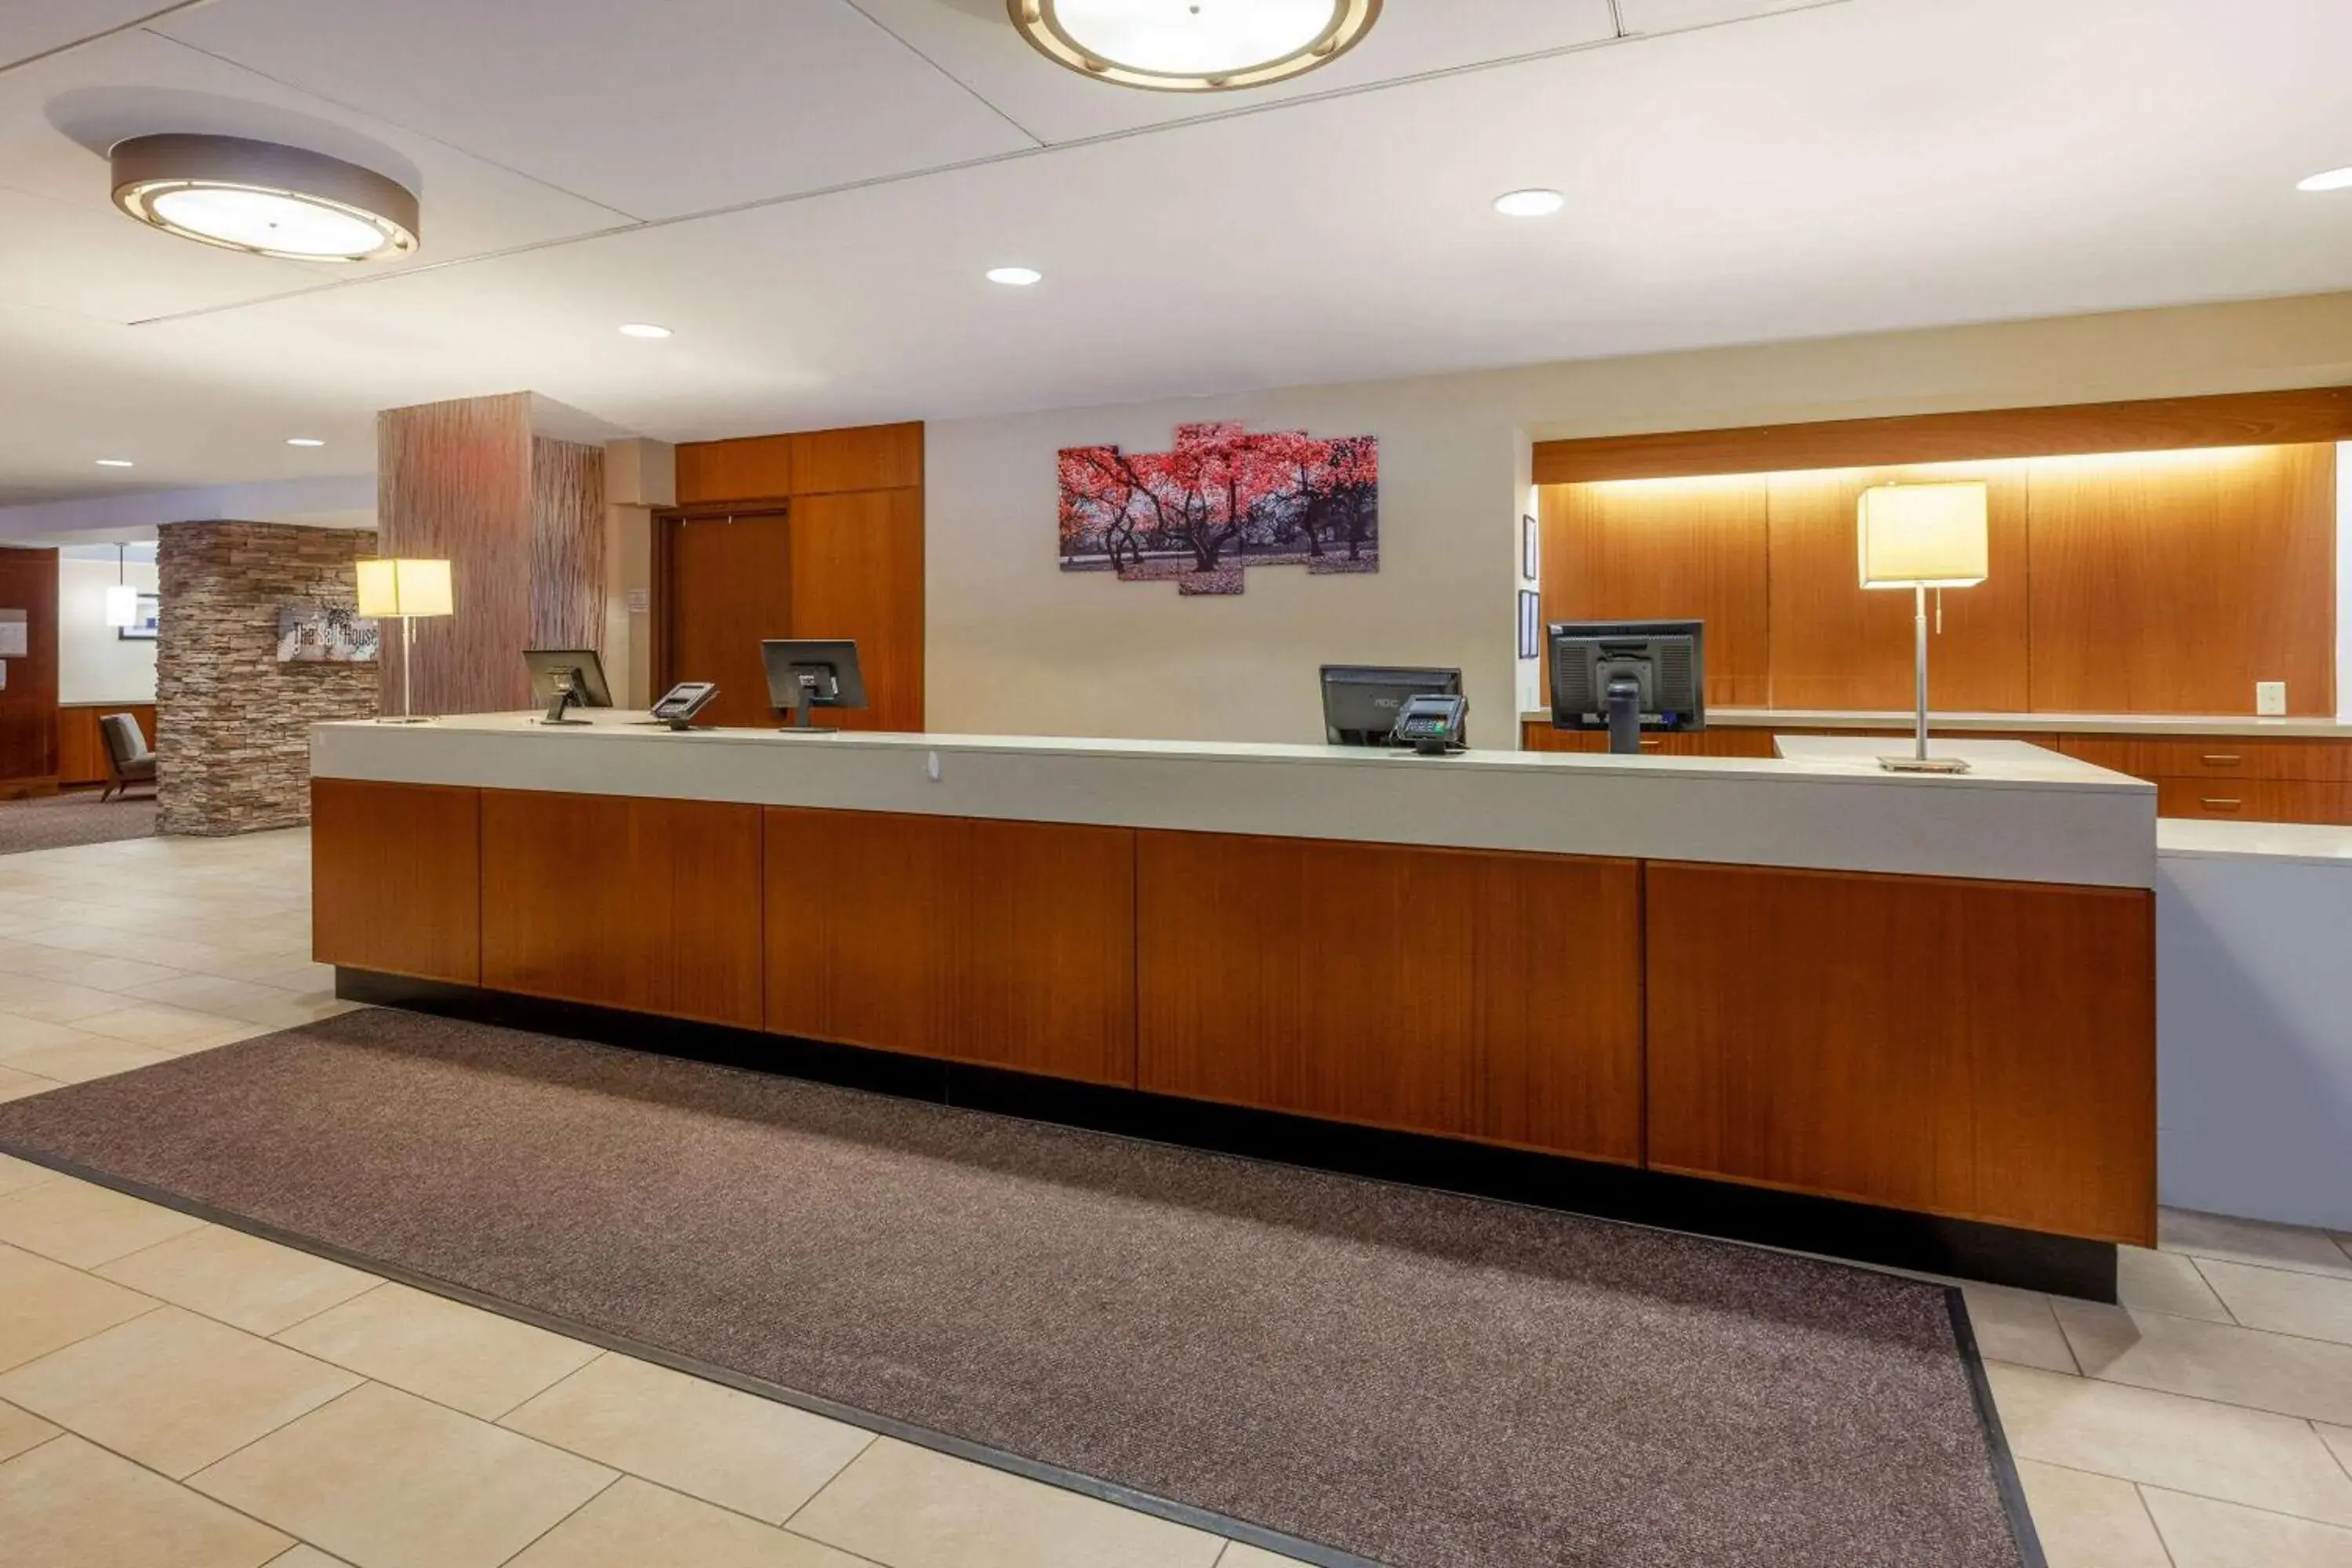 Lobby or reception, Lobby/Reception in Ramada by Wyndham Liverpool Syracuse